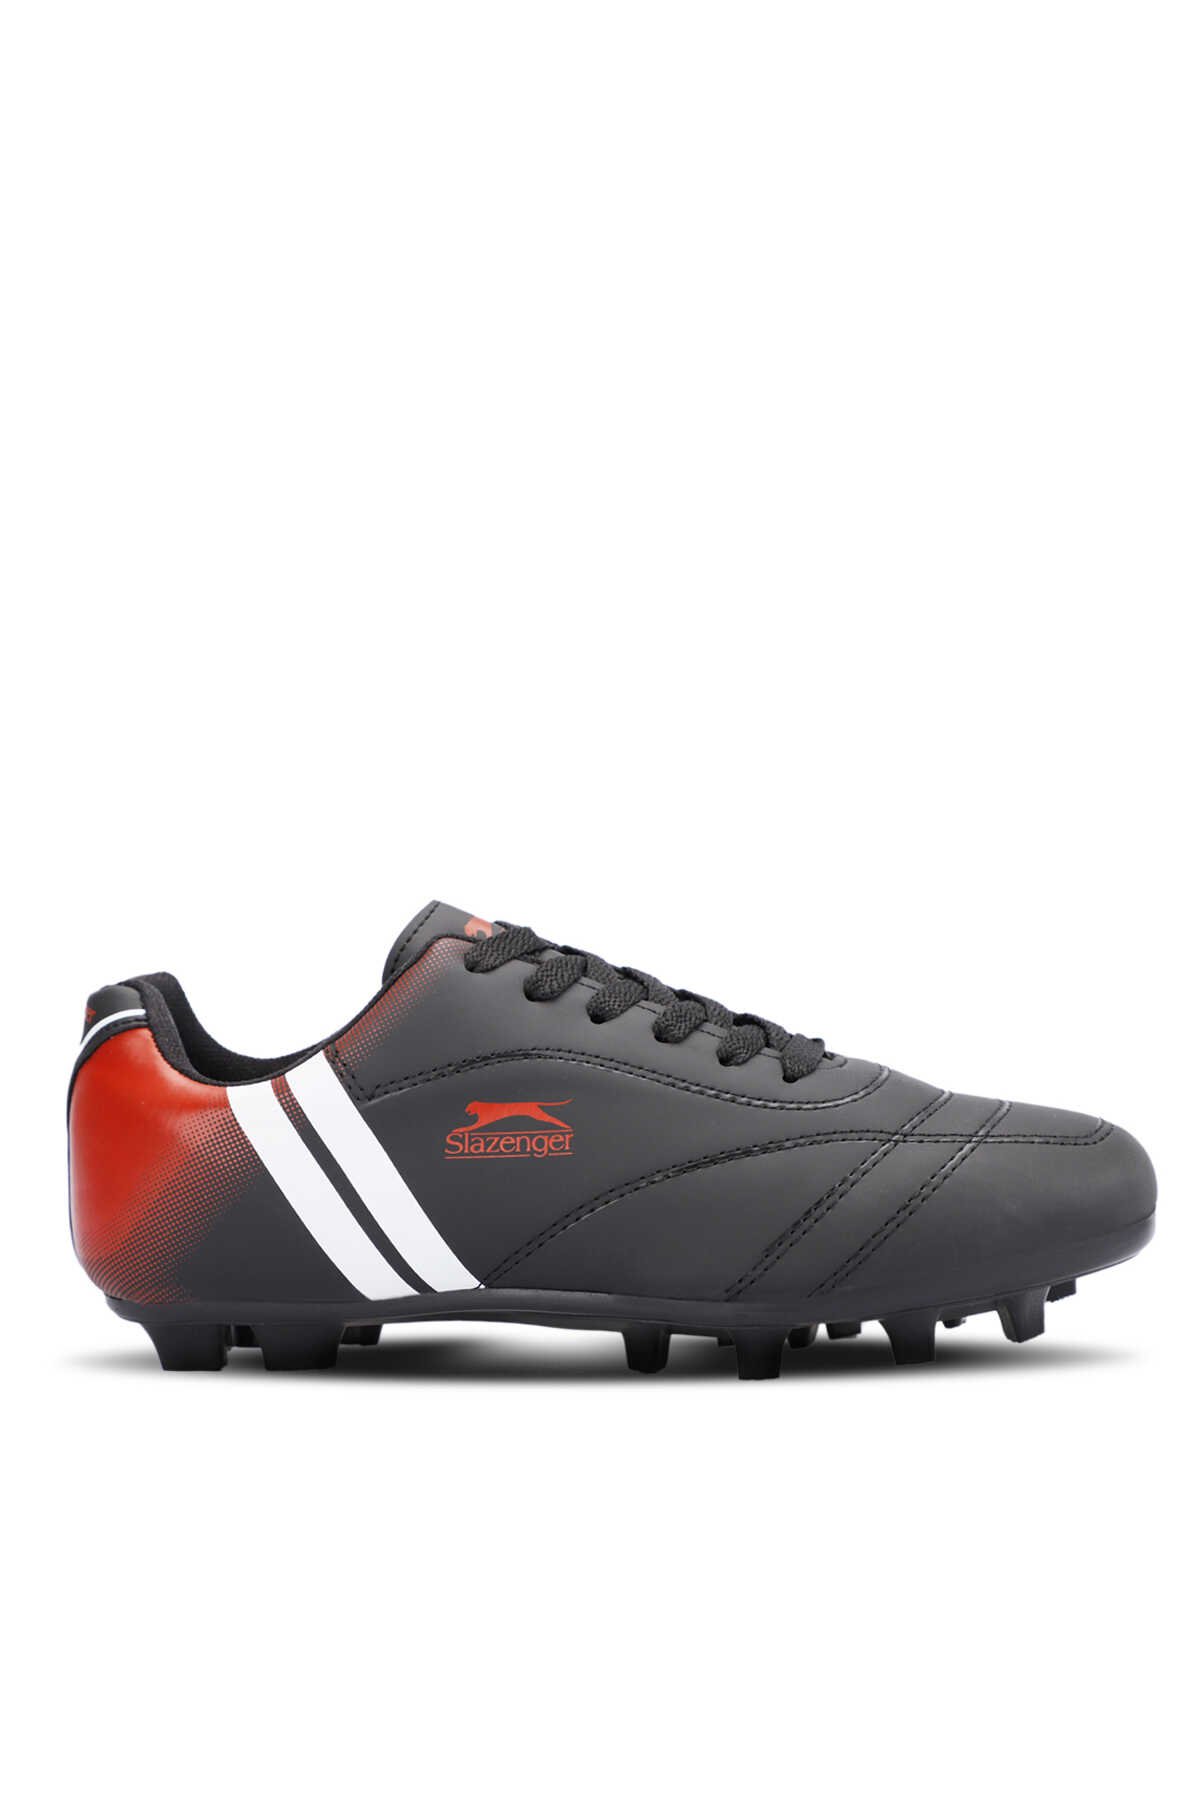 Slazenger - MARK KRP Futbol Erkek Krampon Ayakkabı Siyah / Beyaz / Kırmızı